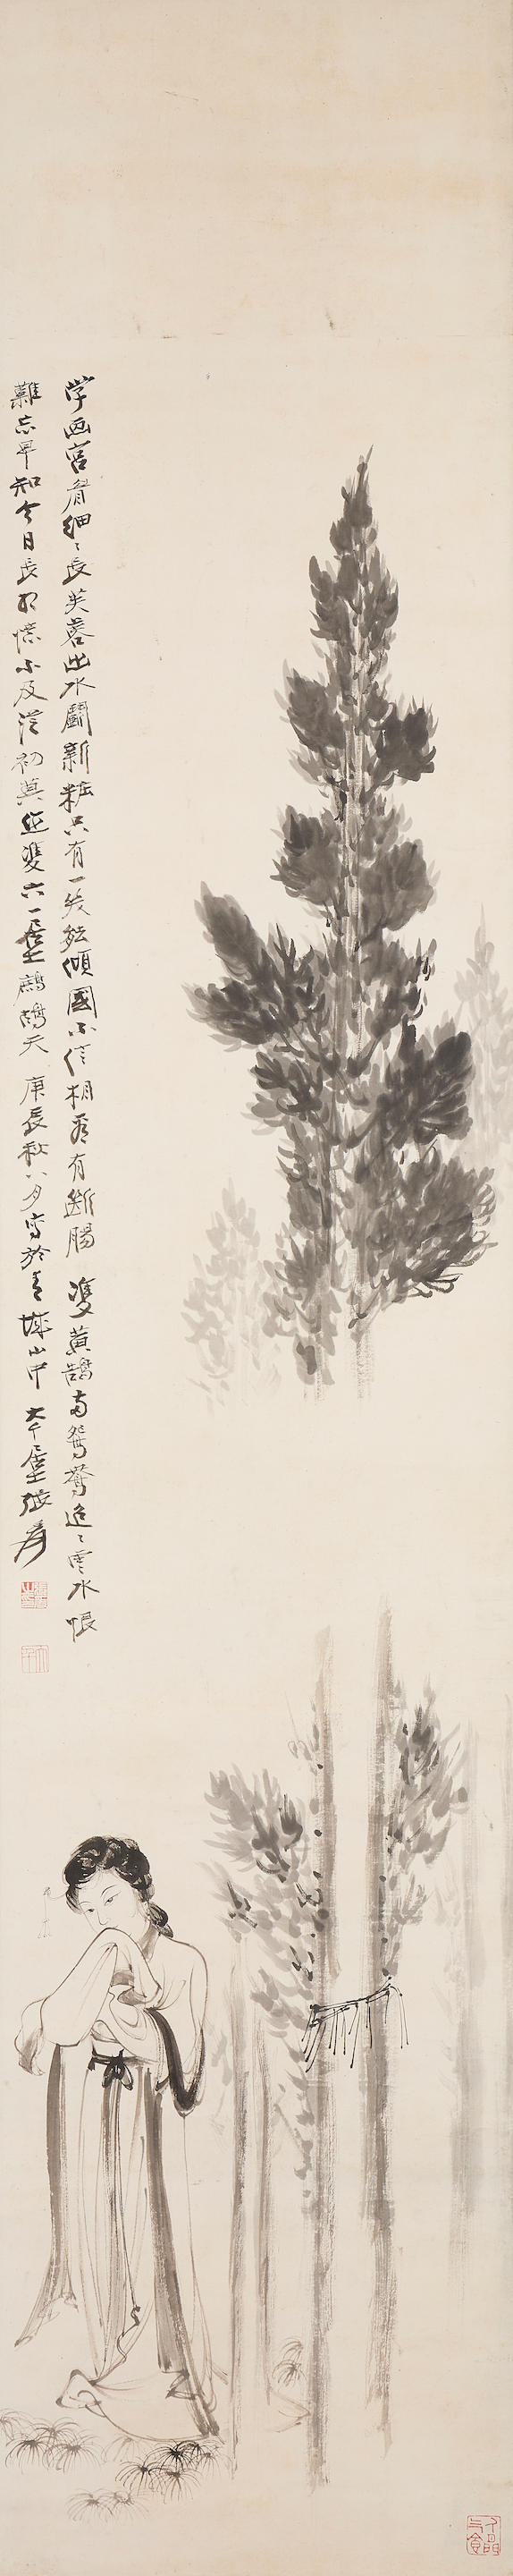 Zhang Daqian (1899-1983)